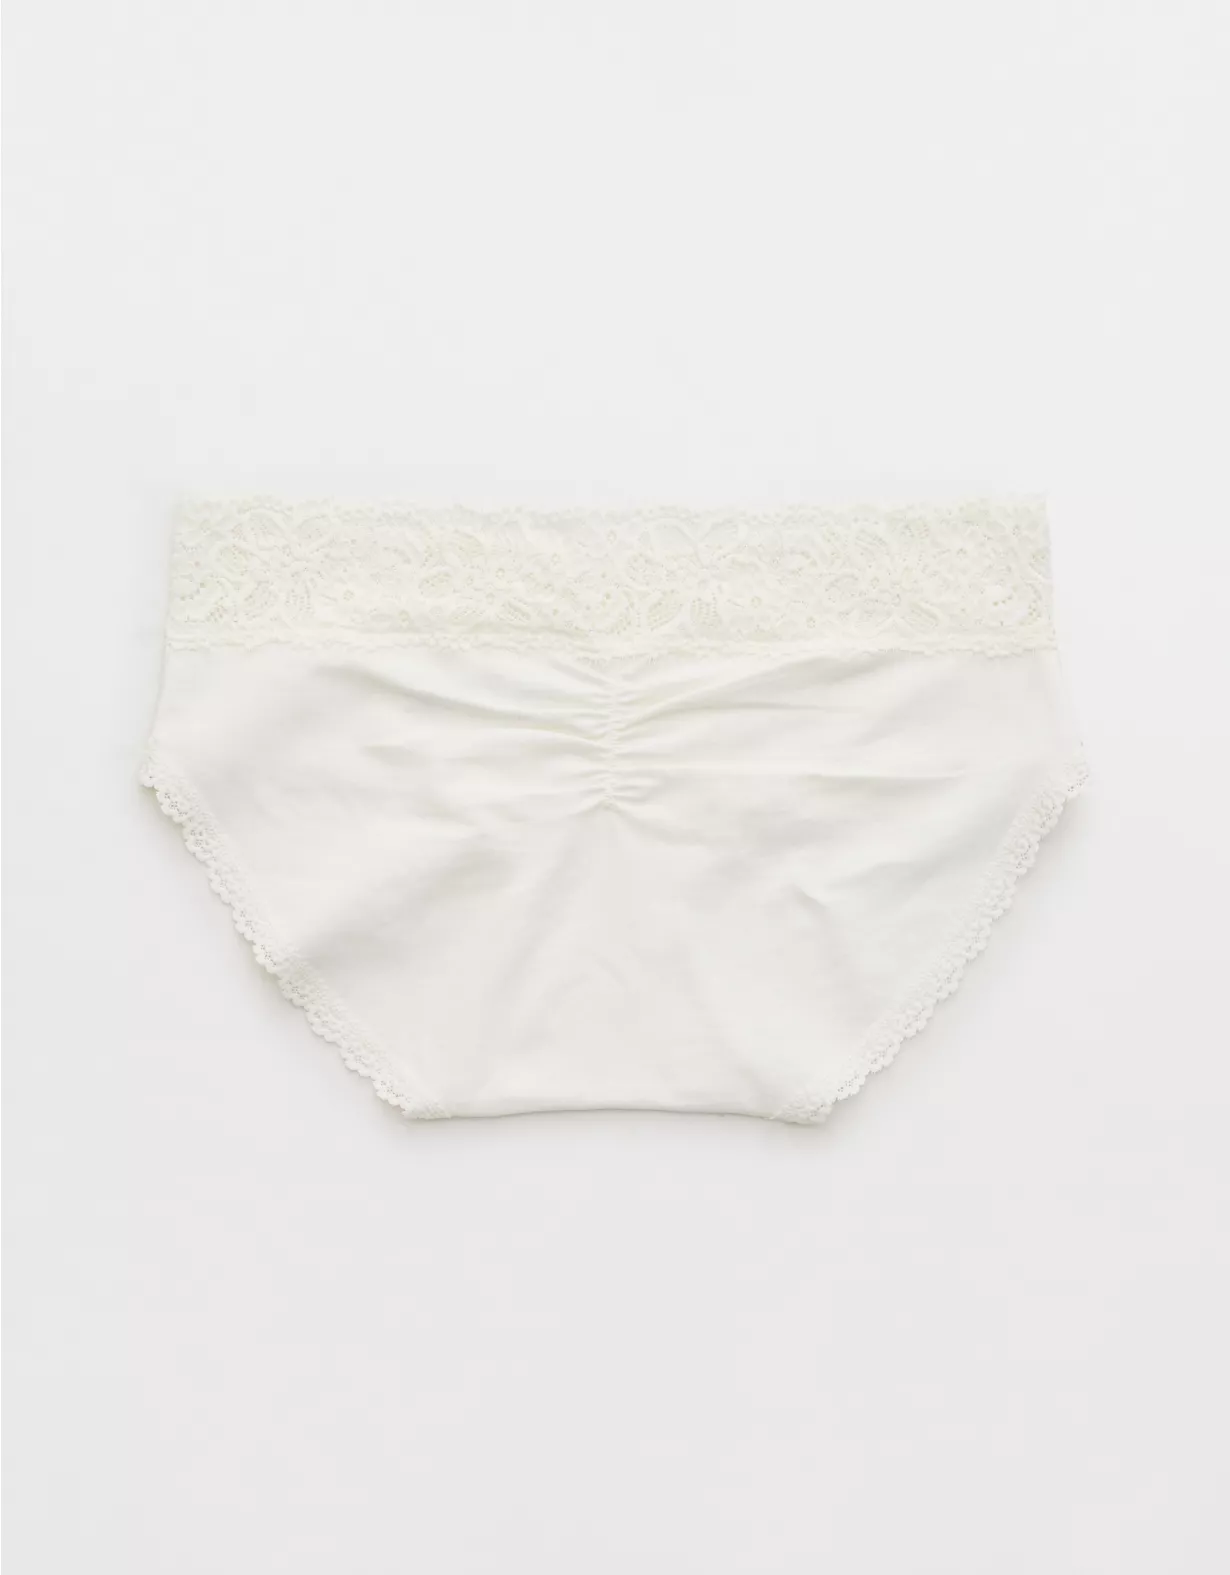 Aerie Cotton Eyelash Lace Boybrief Underwear